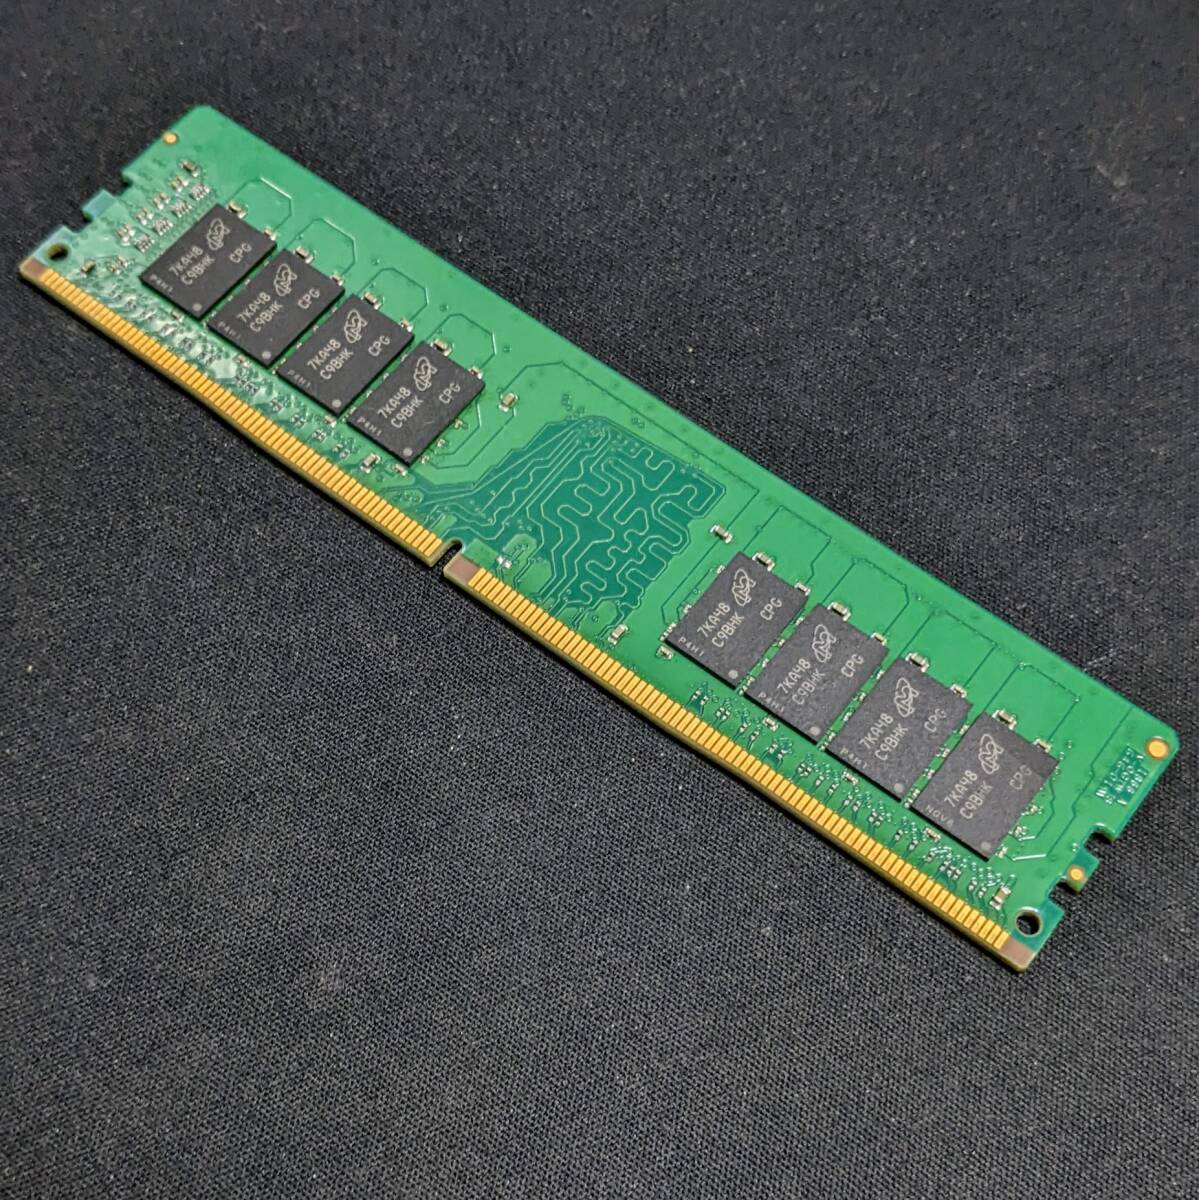 クルーシャル DDR4-2133 8GB PC4-17000U (DDR4-2133)デスクトップPC用メモリ crucial製